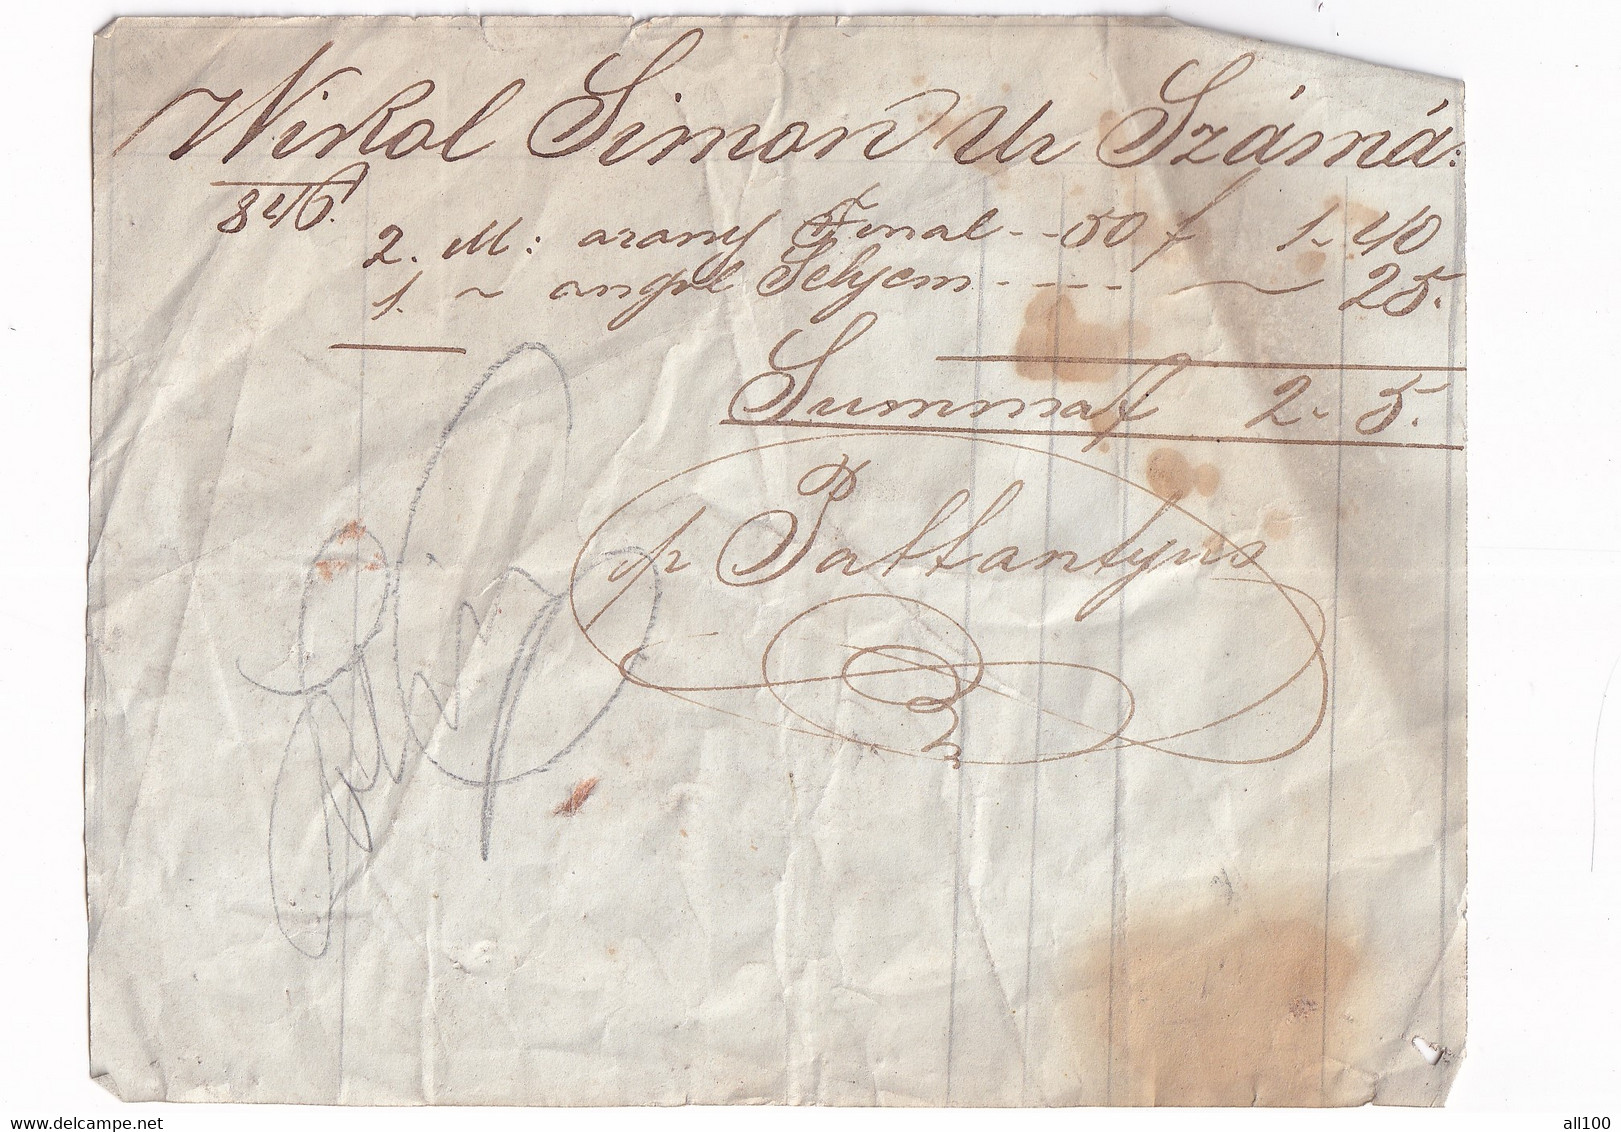 A18760 - RECEIPT FROM AUSTRIAN EMPIRE 1846 WIKOL SIMON WRITTEN IN HUNGARIAN OLD HANDWRITTEN DOCUMENT - Autriche